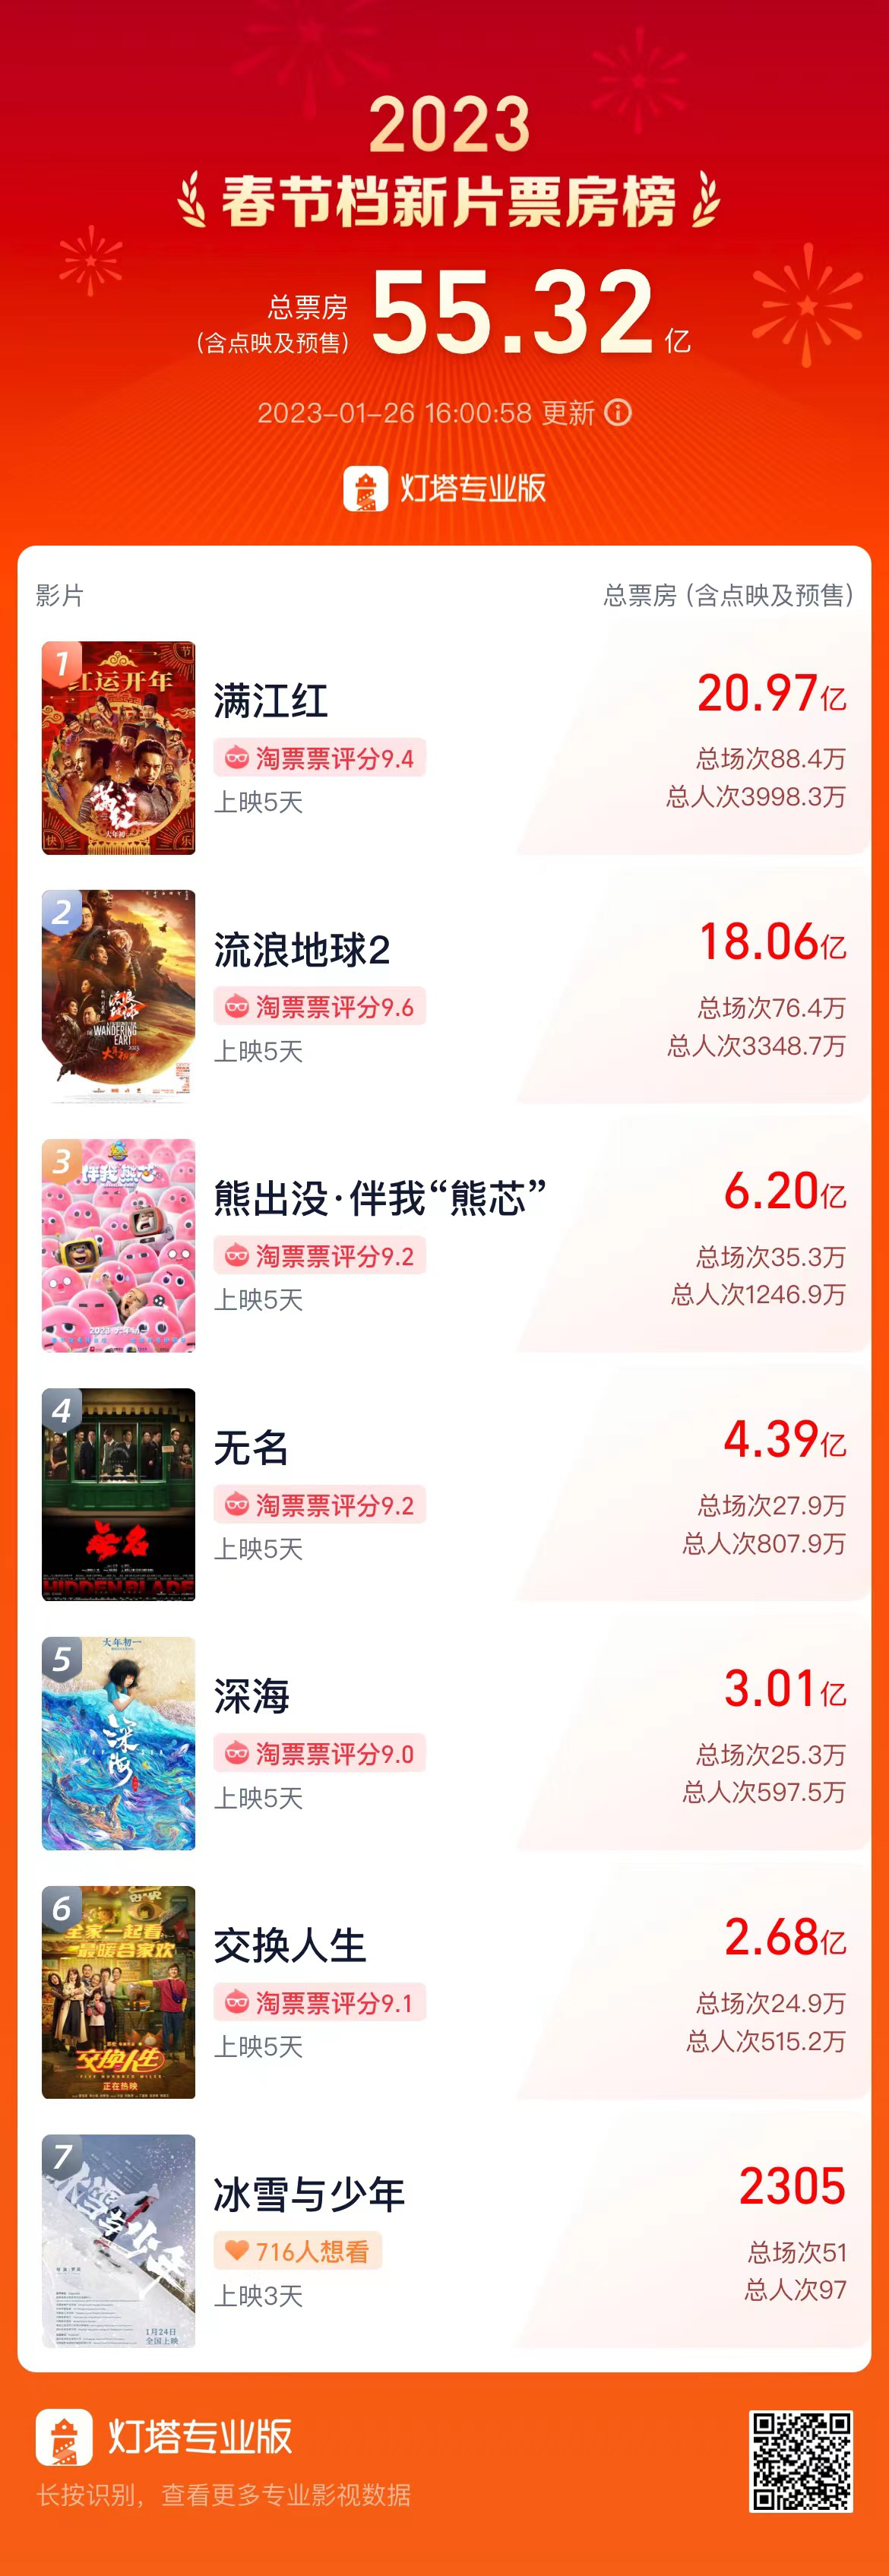 春节档票房破55亿 《满江红》获20.97亿暂居第一